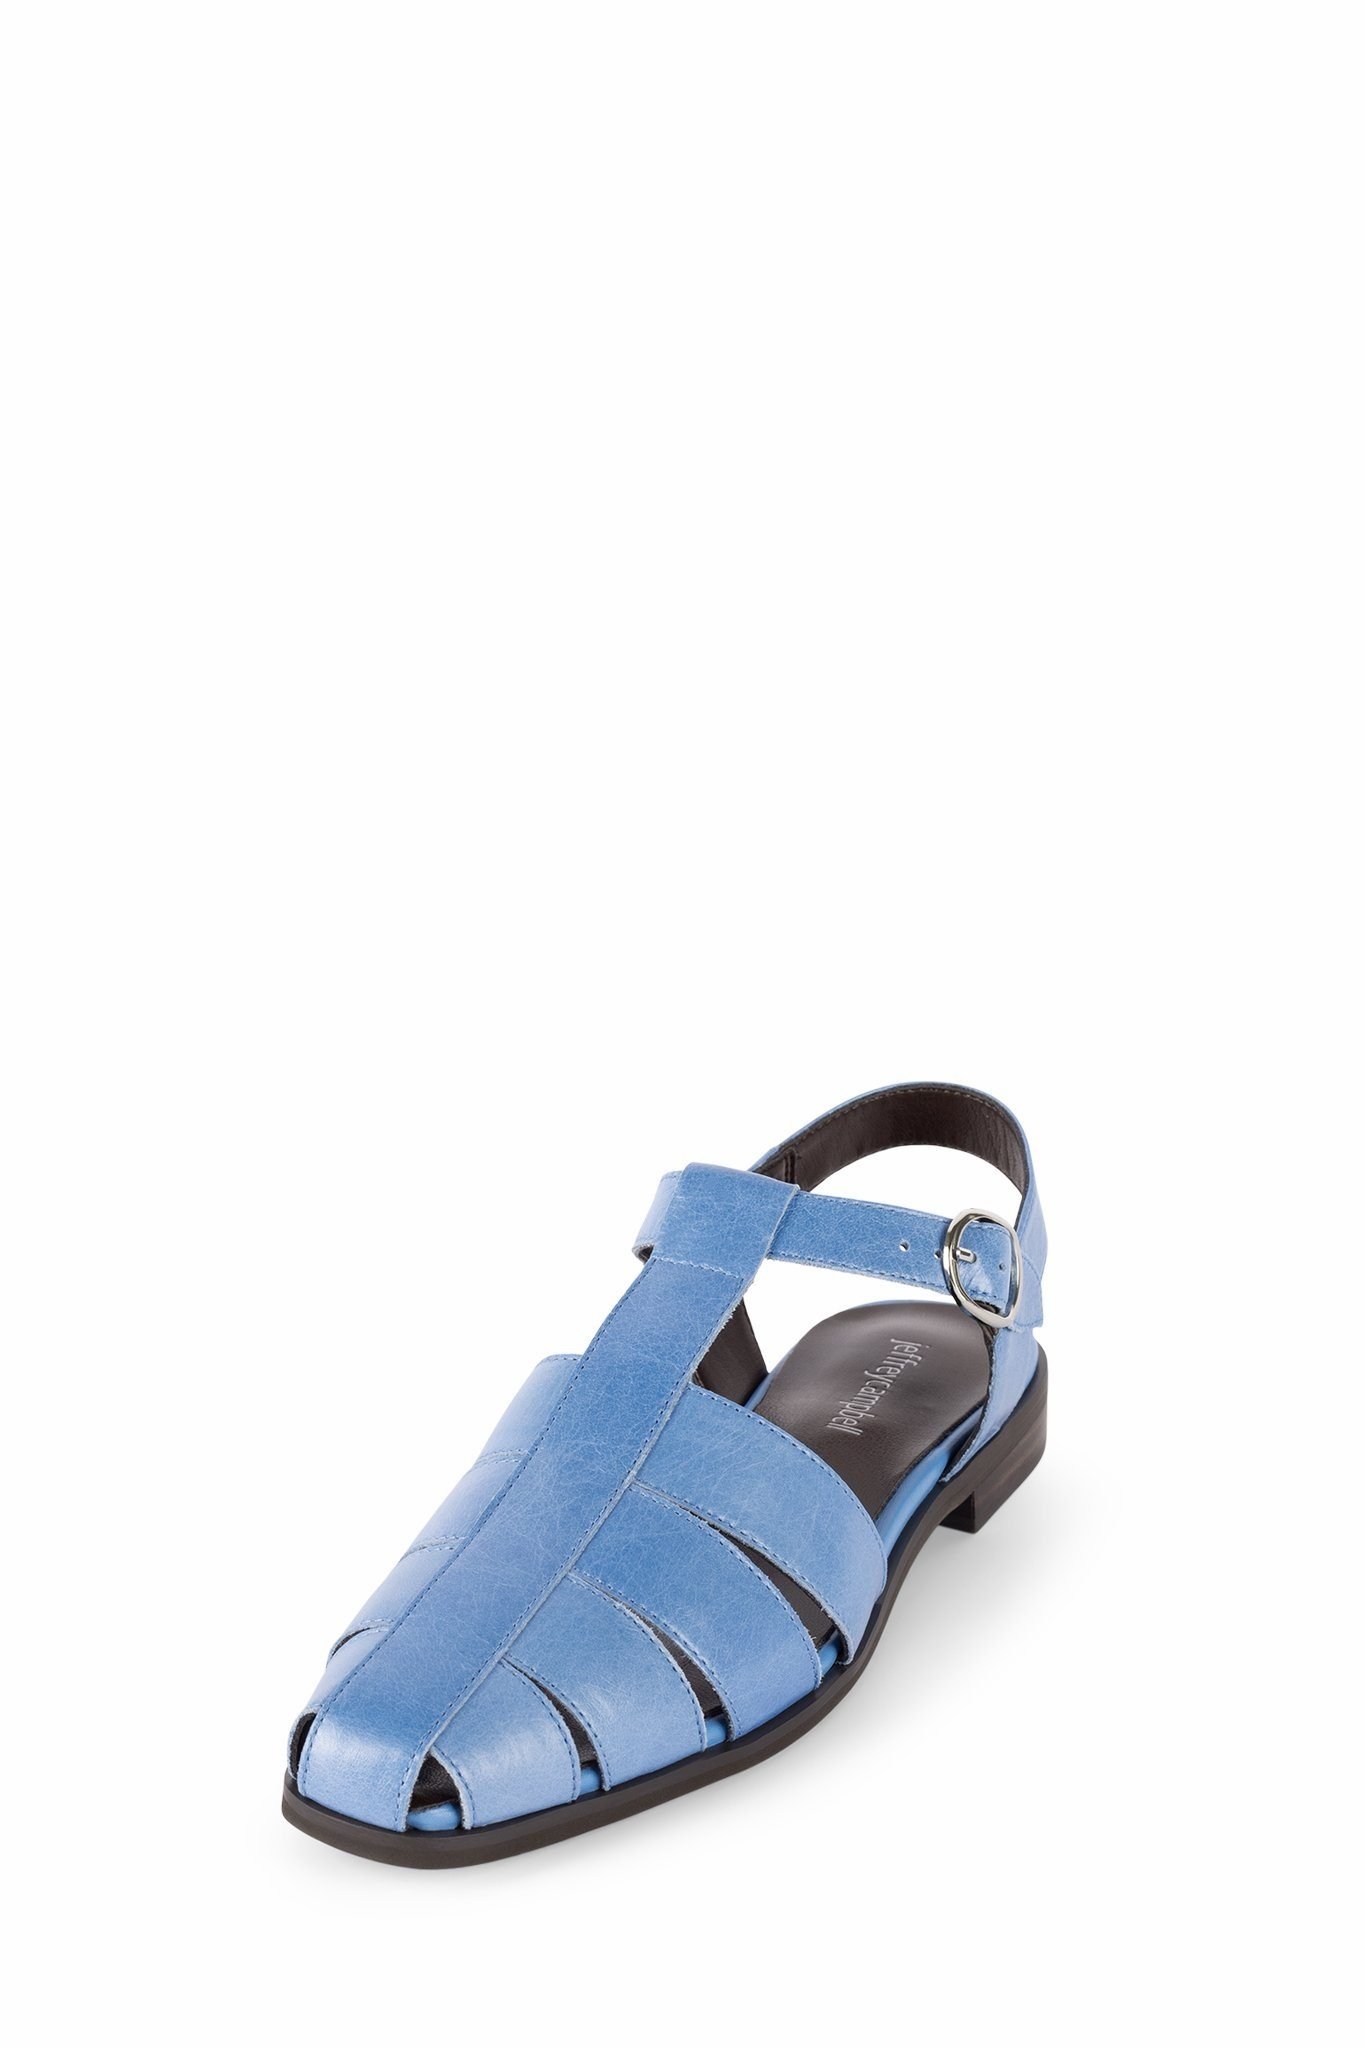 Jeffrey Campbell Landen Blue Sandal